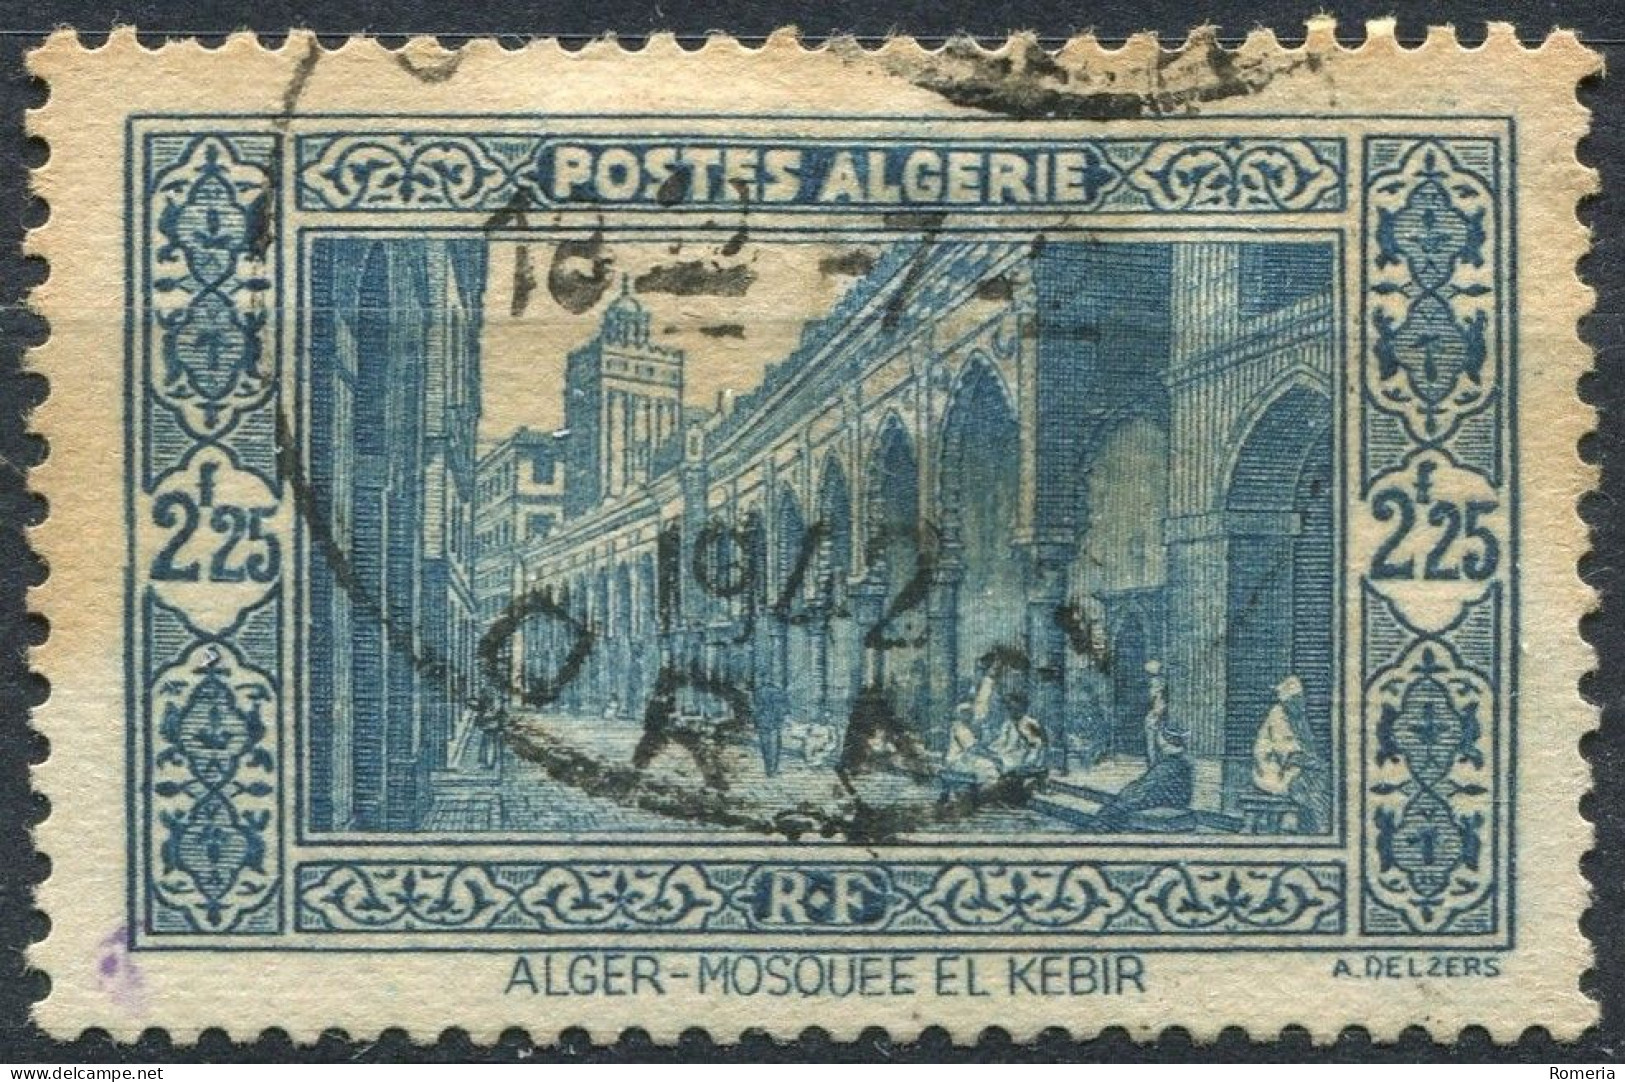 Algérie - 1936 -> 1941 - Lots timbres oblitérés - Yt 101 á 126 (sauf 113)- 138 - 140 - 140A - 140A - 141A - 148 - 167